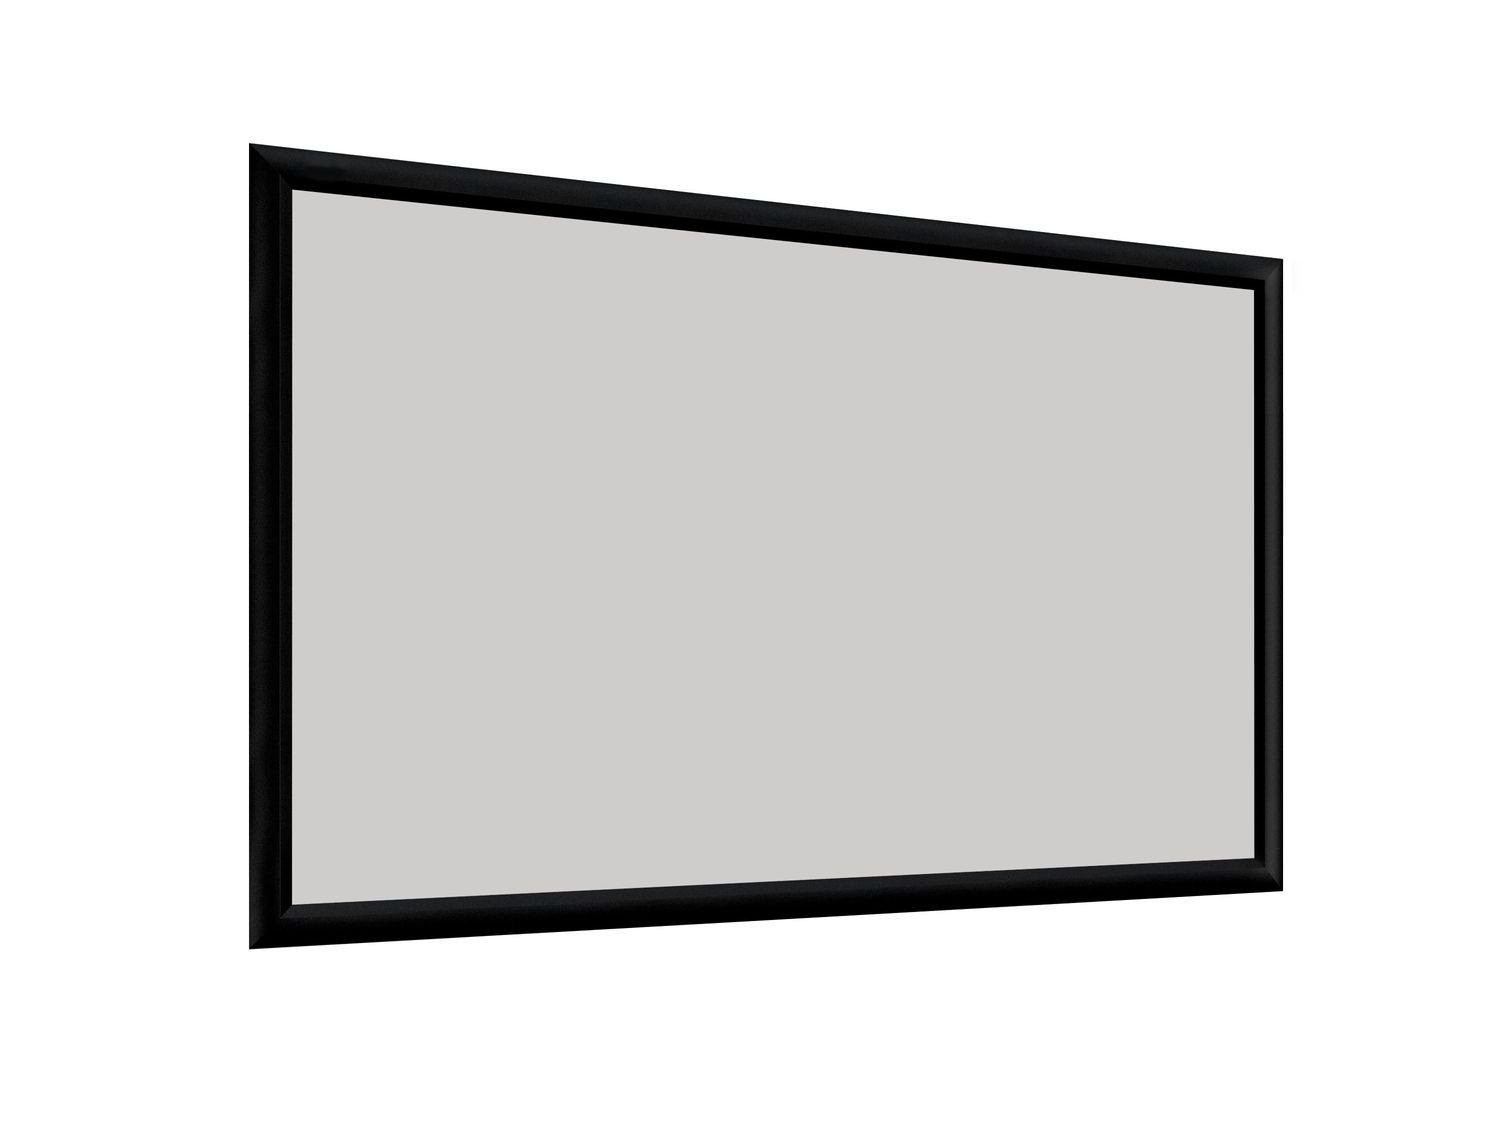 Deluxx Cinema - Dayvision ALR Rahmenleinwand (265 x 149cm, 16:9, Gain 1)